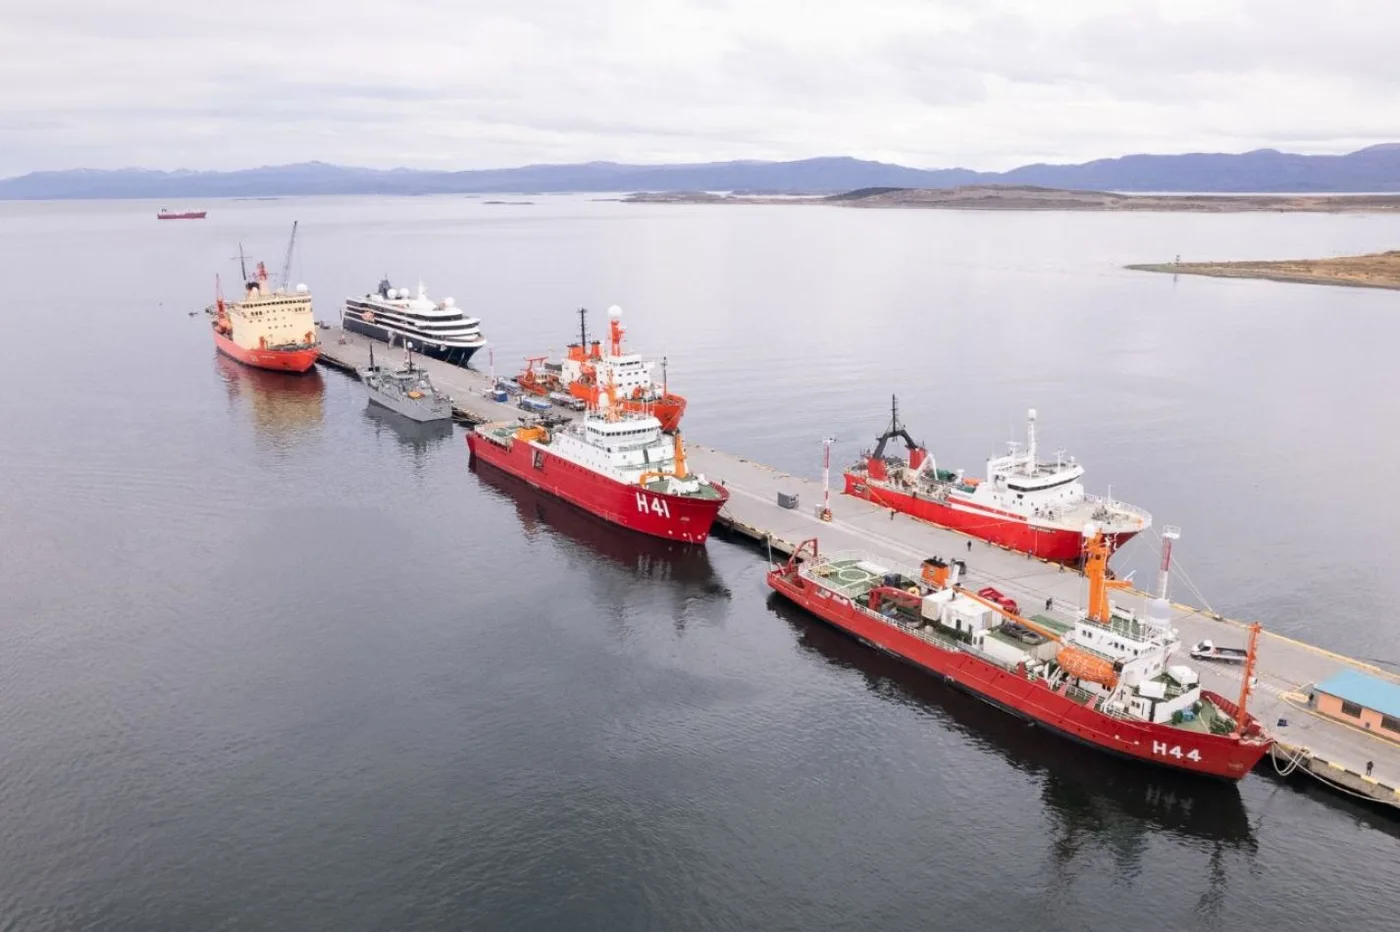 Amarre de embarcaciones pertenecientes a programas Antárticos en puerto de Ushuaia.